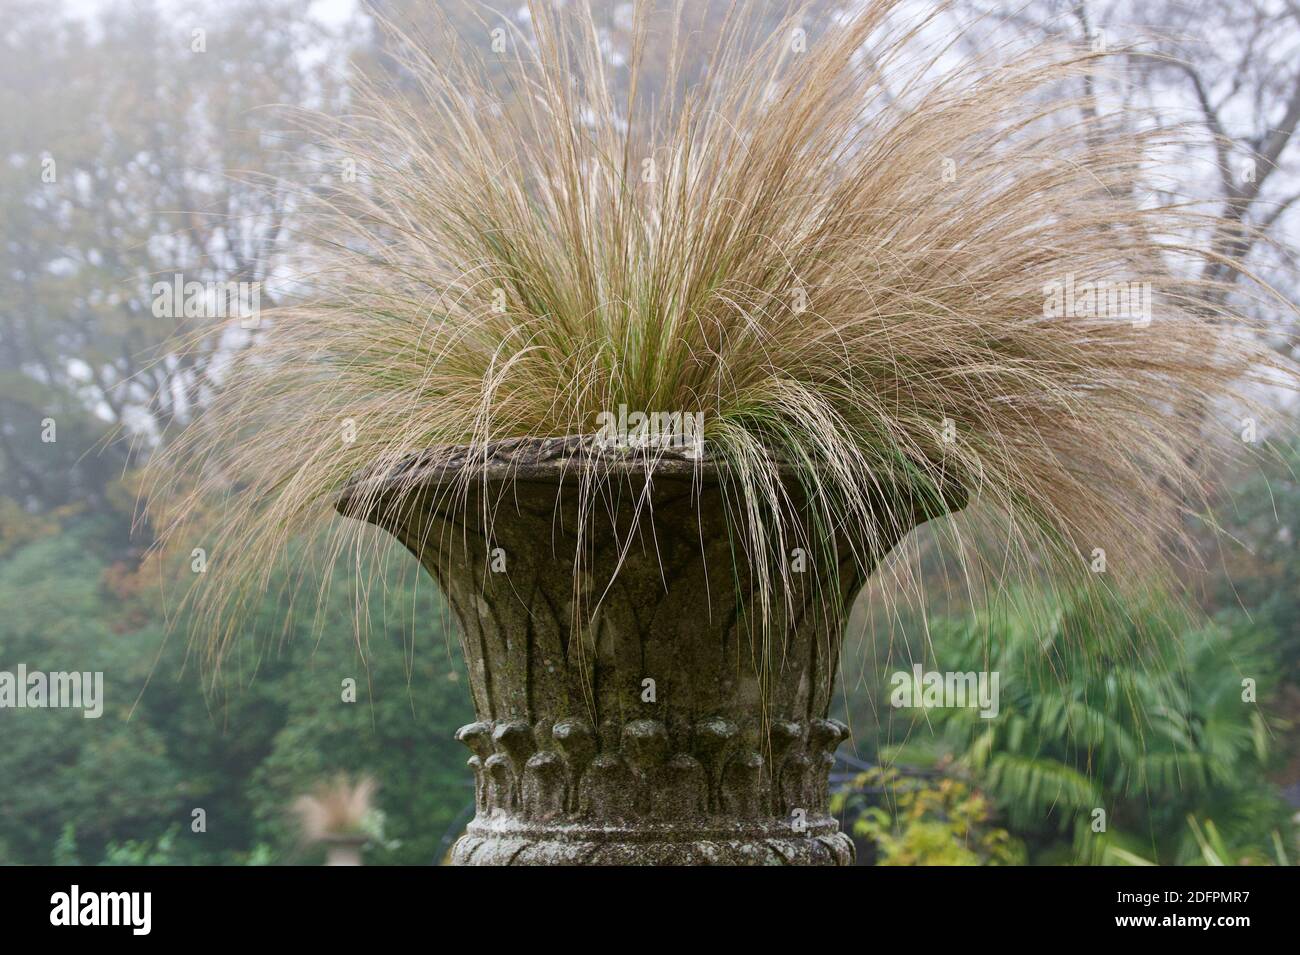 Urn of ornamental grasses in garden setting on misty winter's morning Stock Photo